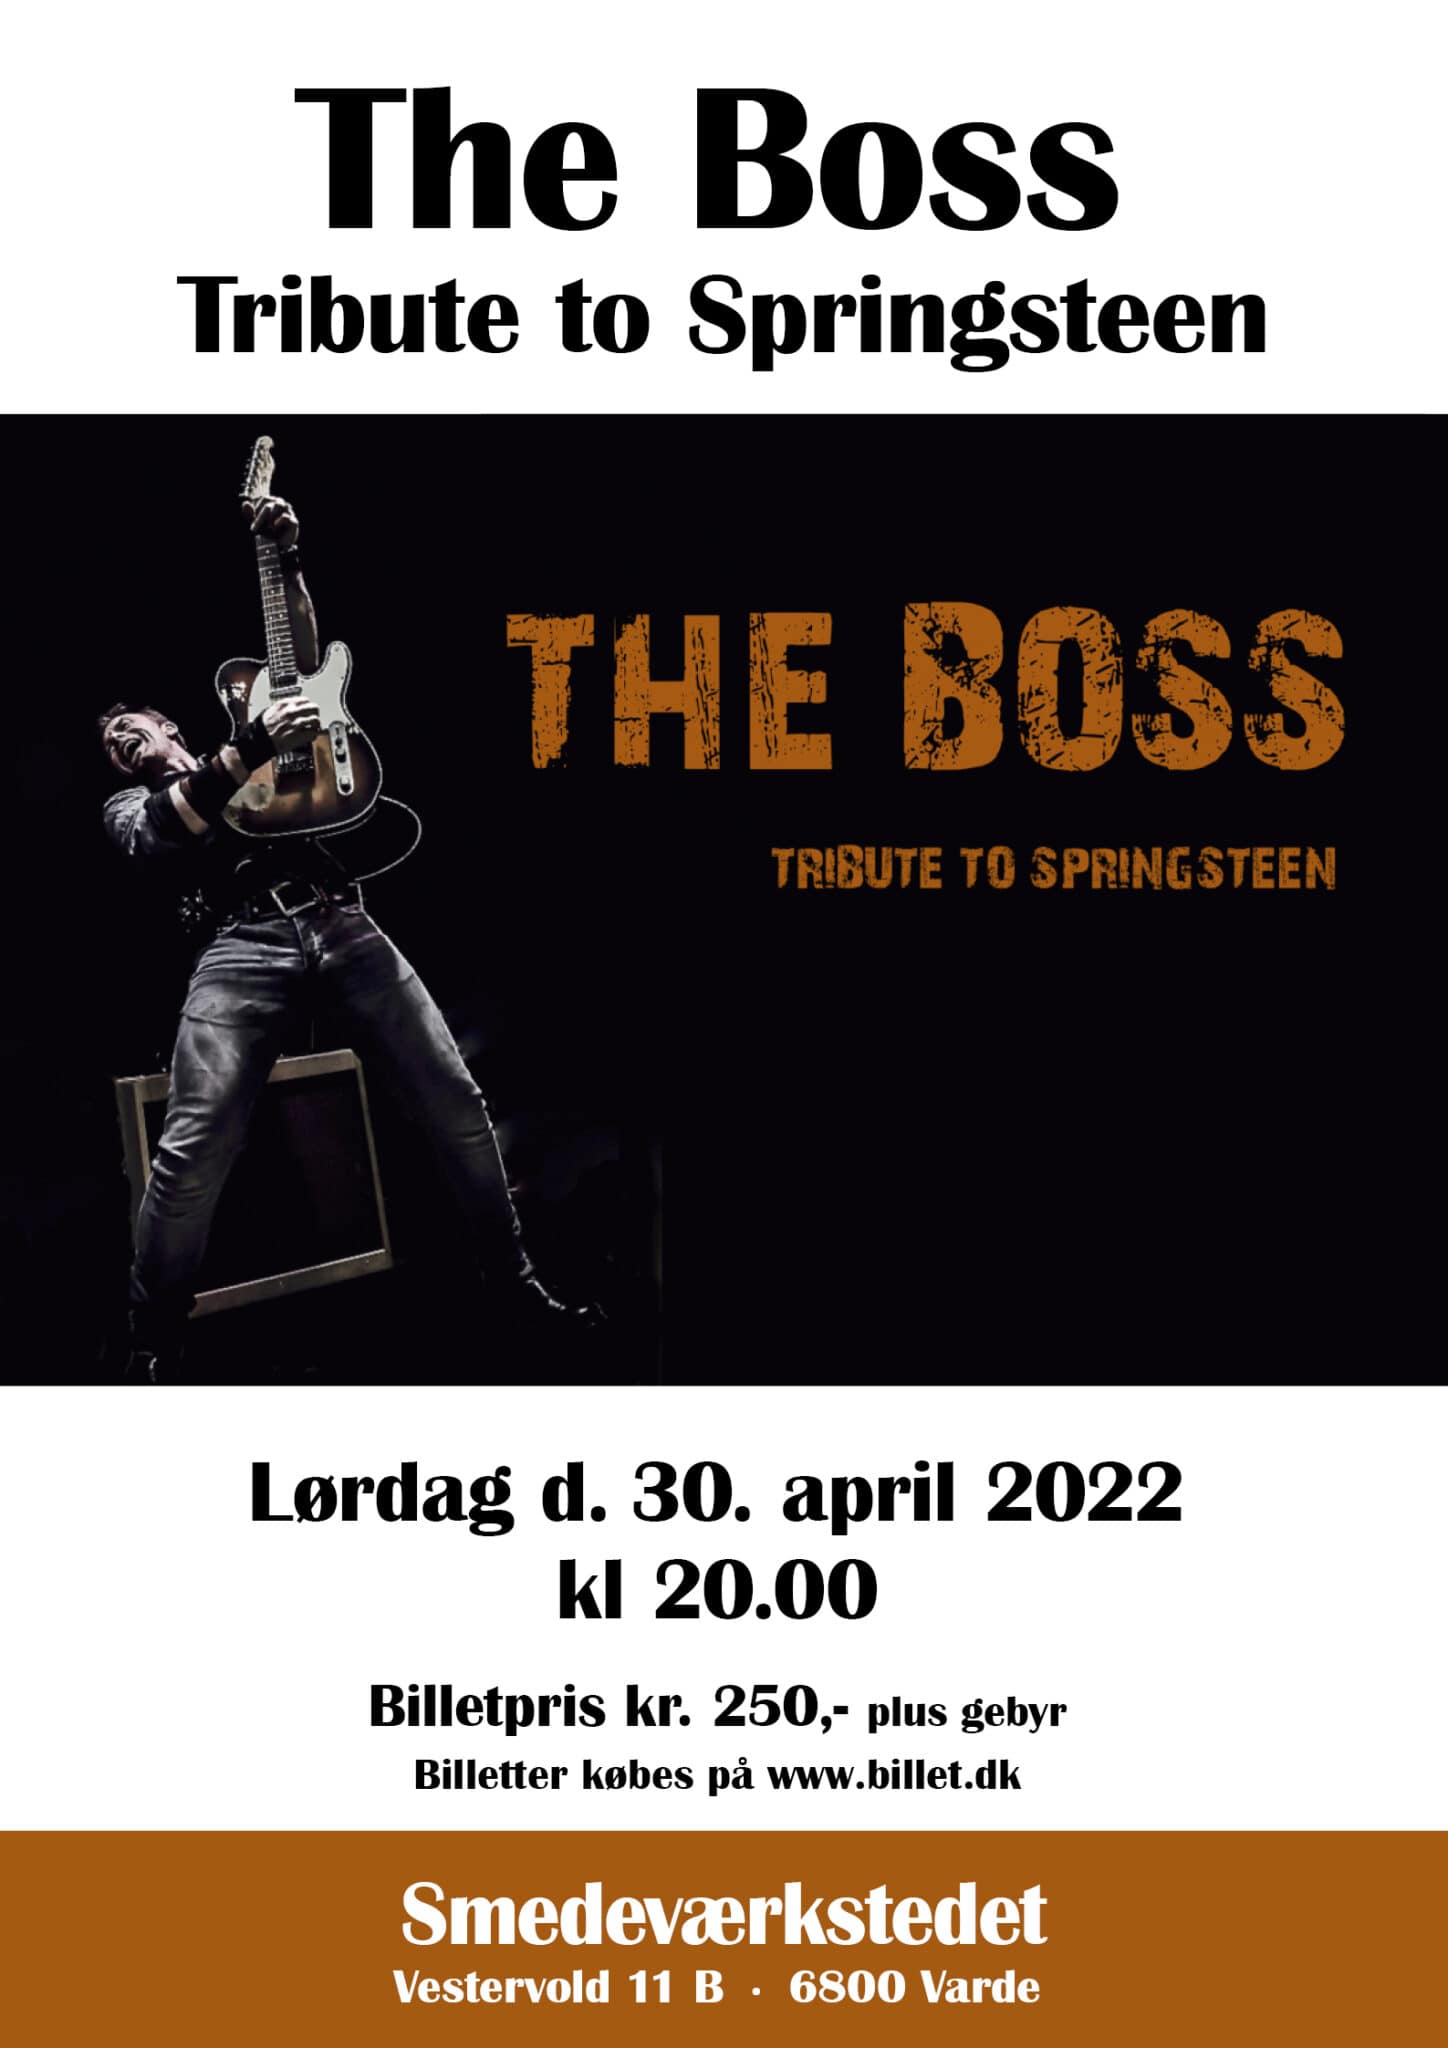 The overbeviser Springsteen-fans - nu på Smedeværkstedet i Varde - GoVarde.dk